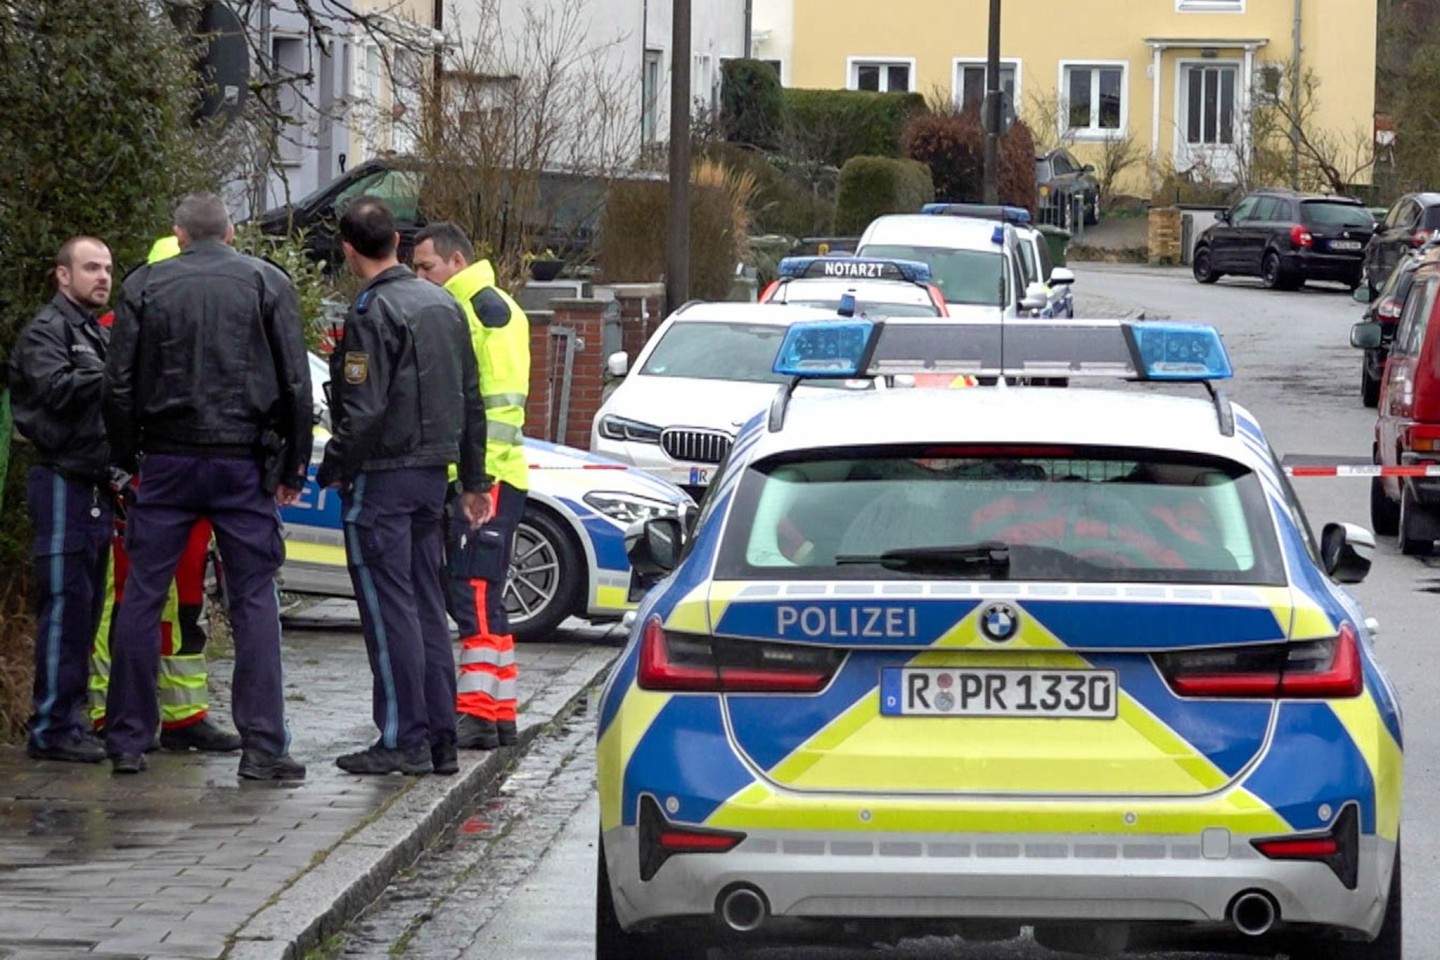 Polizei und Notarzt stehen vor dem Haus in Regensburg, in dem sich die Gewalttaten ereigneten.